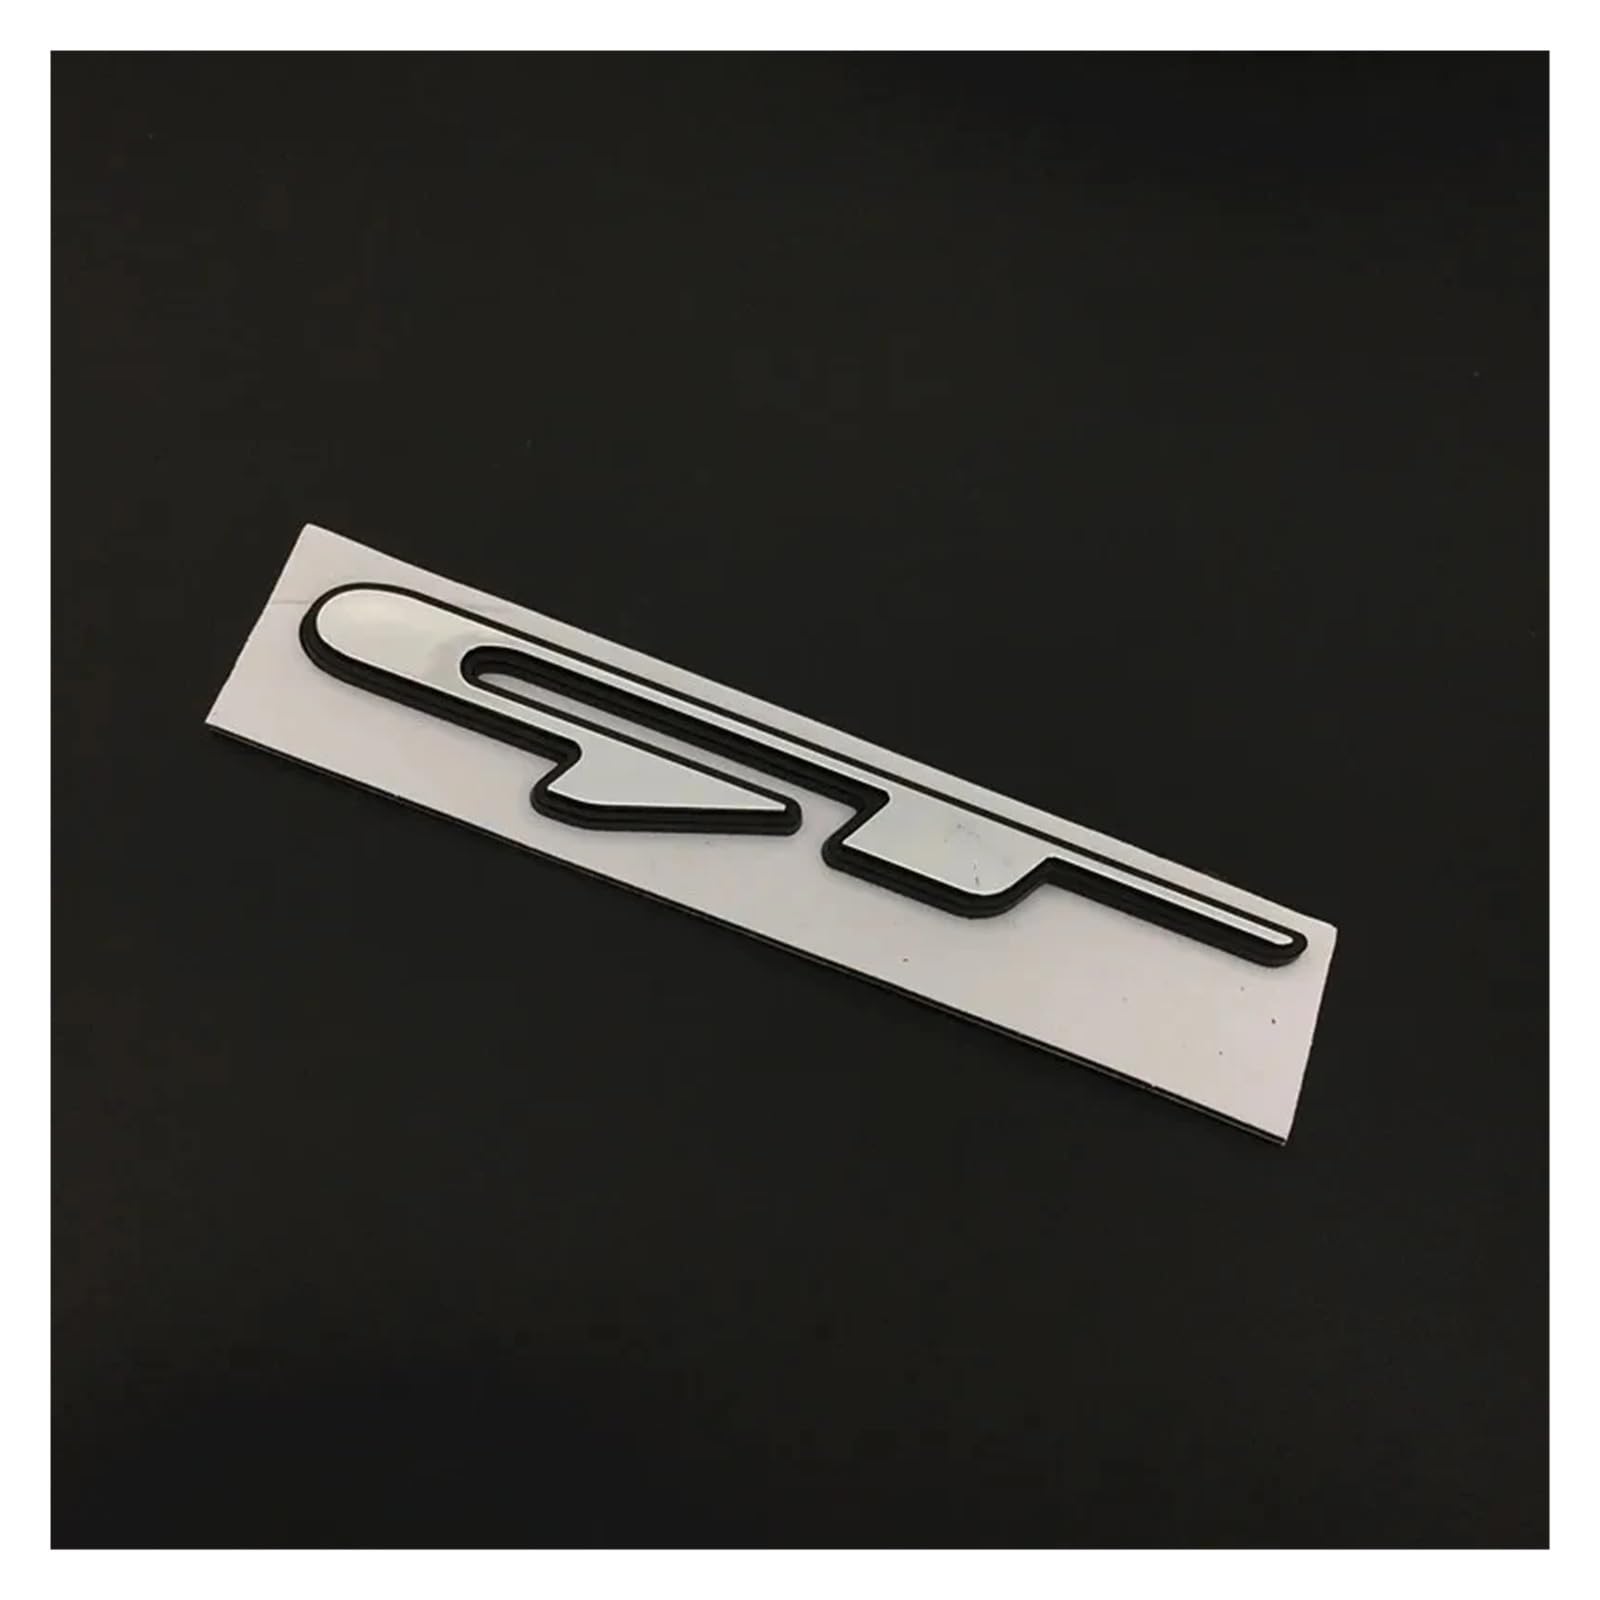 Aqxyju 3D-Chrom-Autobuchstaben GT Line-Aufkleber, Emblem-Logo, kompatibel mit Ceed Picanto K5 Stonic Optima Sportage GT Line-Abzeichen, Aufkleberzubehör Personalisierte Auto Aufkleber(GT) von Aqxyju